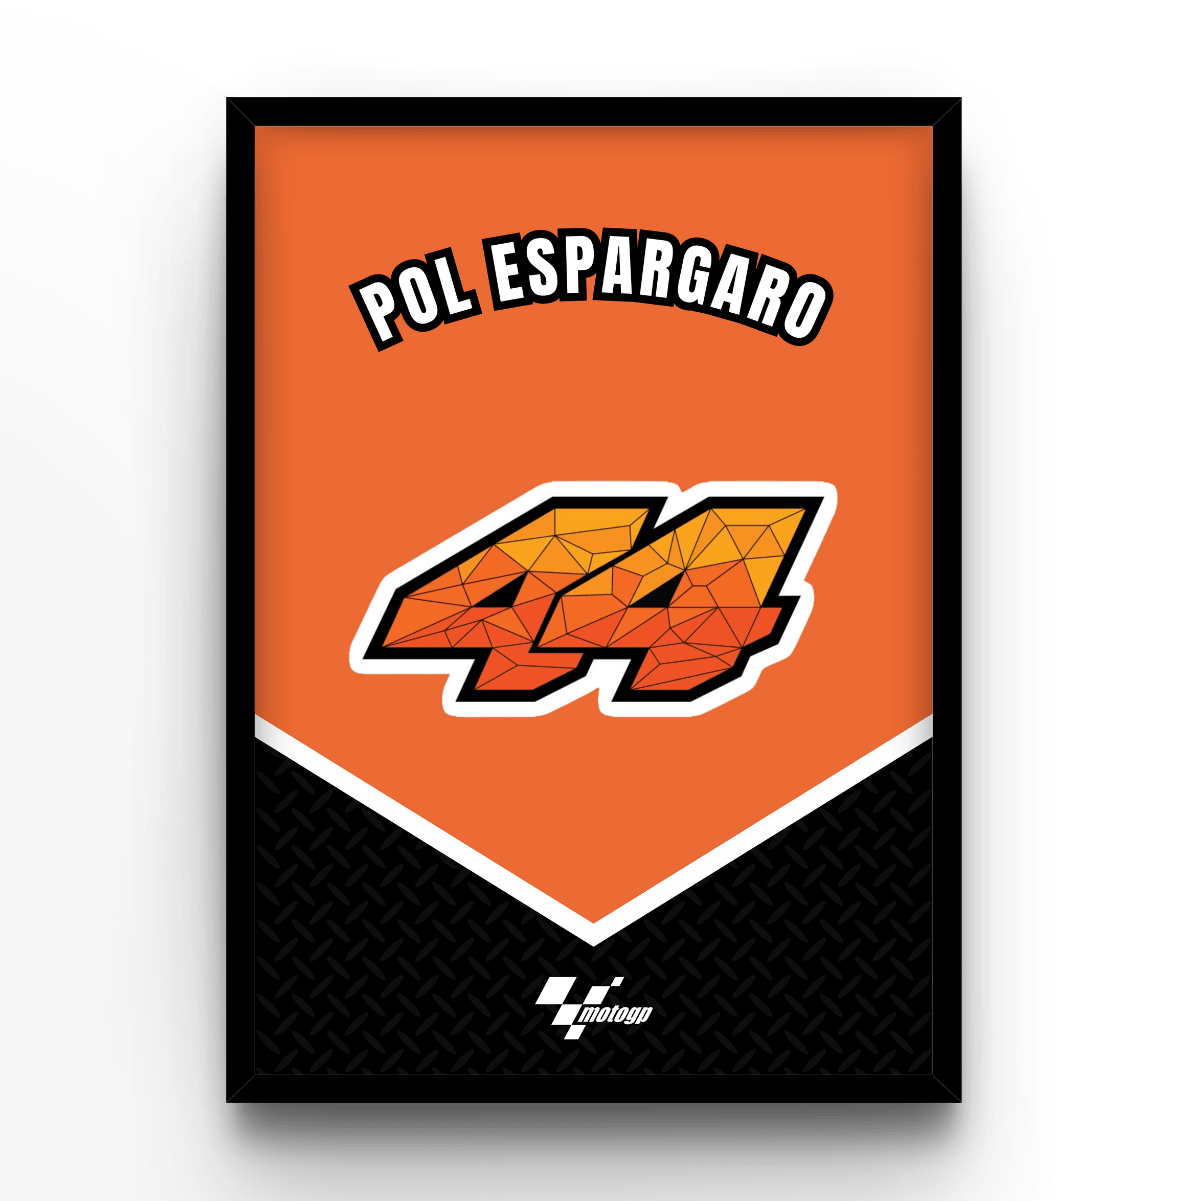 Pol Espargaro - A4, A3, A2 Posters Base - Poster Print Shop / Art Prints / PostersBase